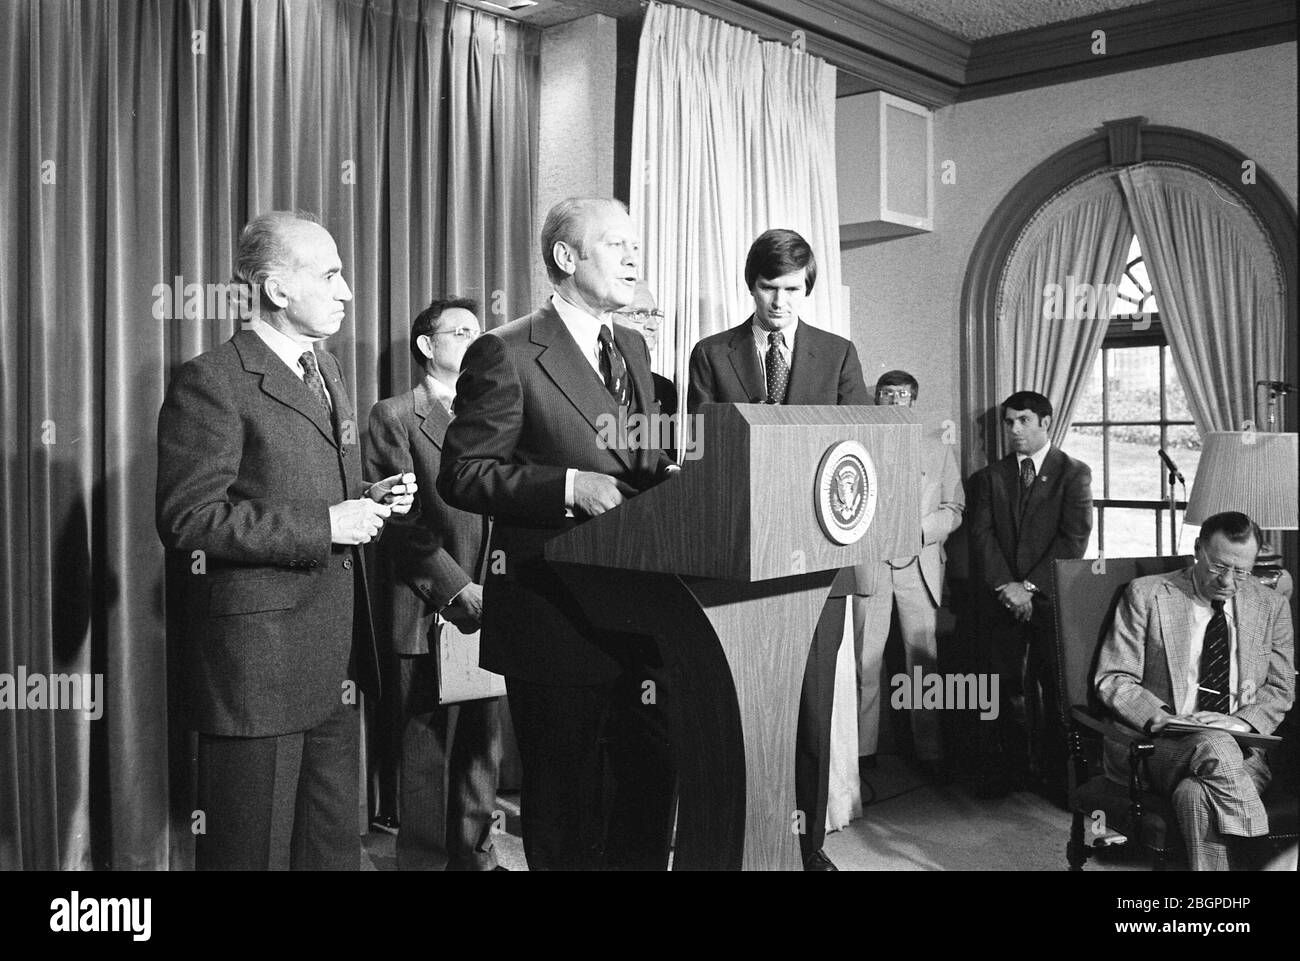 El Presidente Gerald R Ford, acompañado por el Dr. Jonas Salk (izquierda) y el Secretario del Departamento de Salud, Educación y Bienestar, F. David Mathews (derecha), anuncia el programa nacional de inmunización contra la gripe porcina en la sala de prensa, Washington, DC, 03/24/1976. Foto de la biblioteca Ricardo Thomas/Gerald R Ford Foto de stock